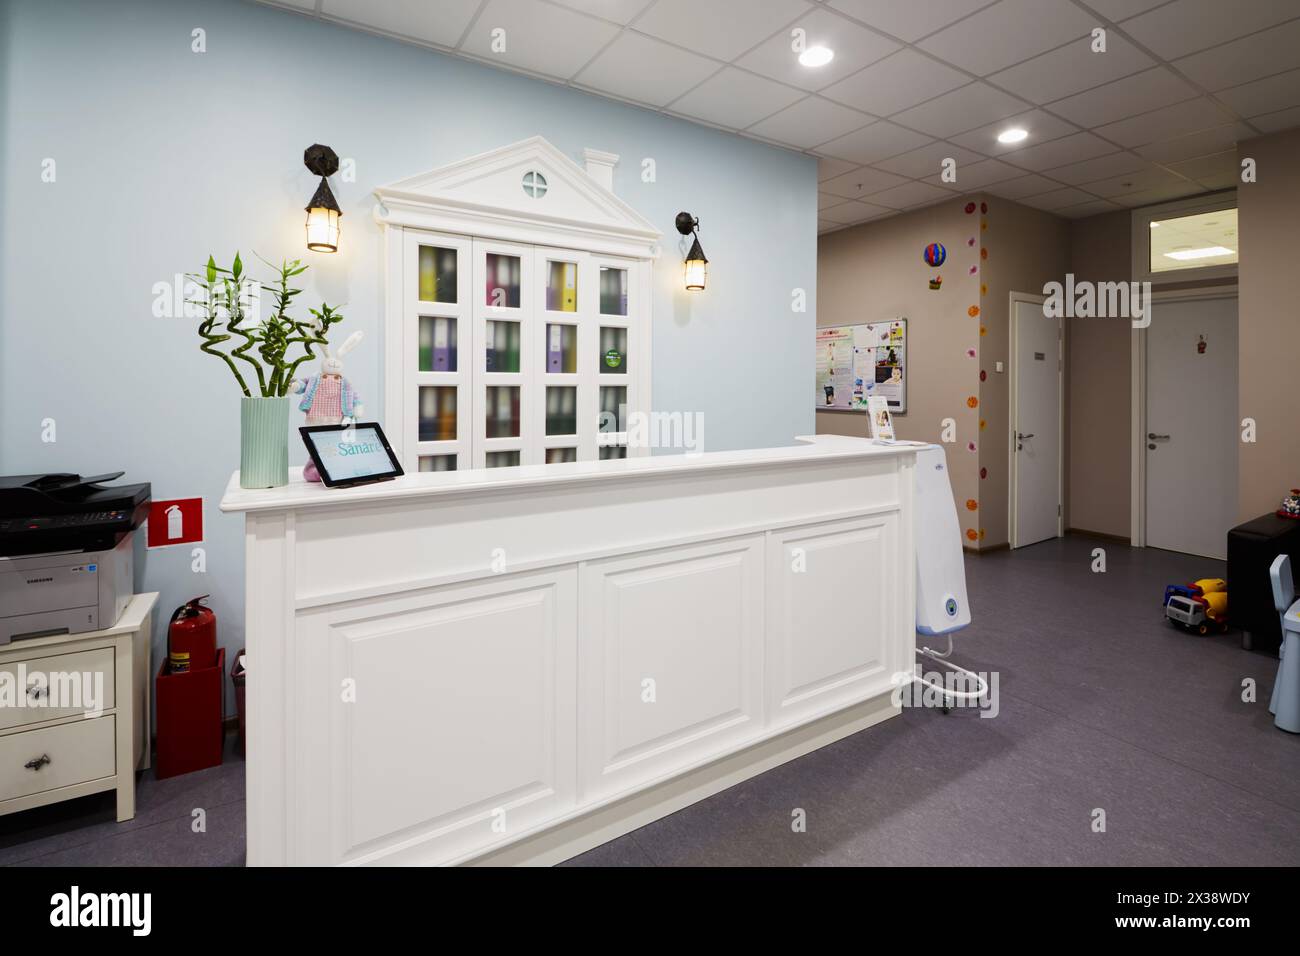 MOSKAU, RUSSLAND - 19. OKT 2016: Innenraum der Empfangshalle in der Kinderklinik Sanare für Kinder aller Altersgruppen von der Geburt bis zum 17. Lebensjahr. Stockfoto